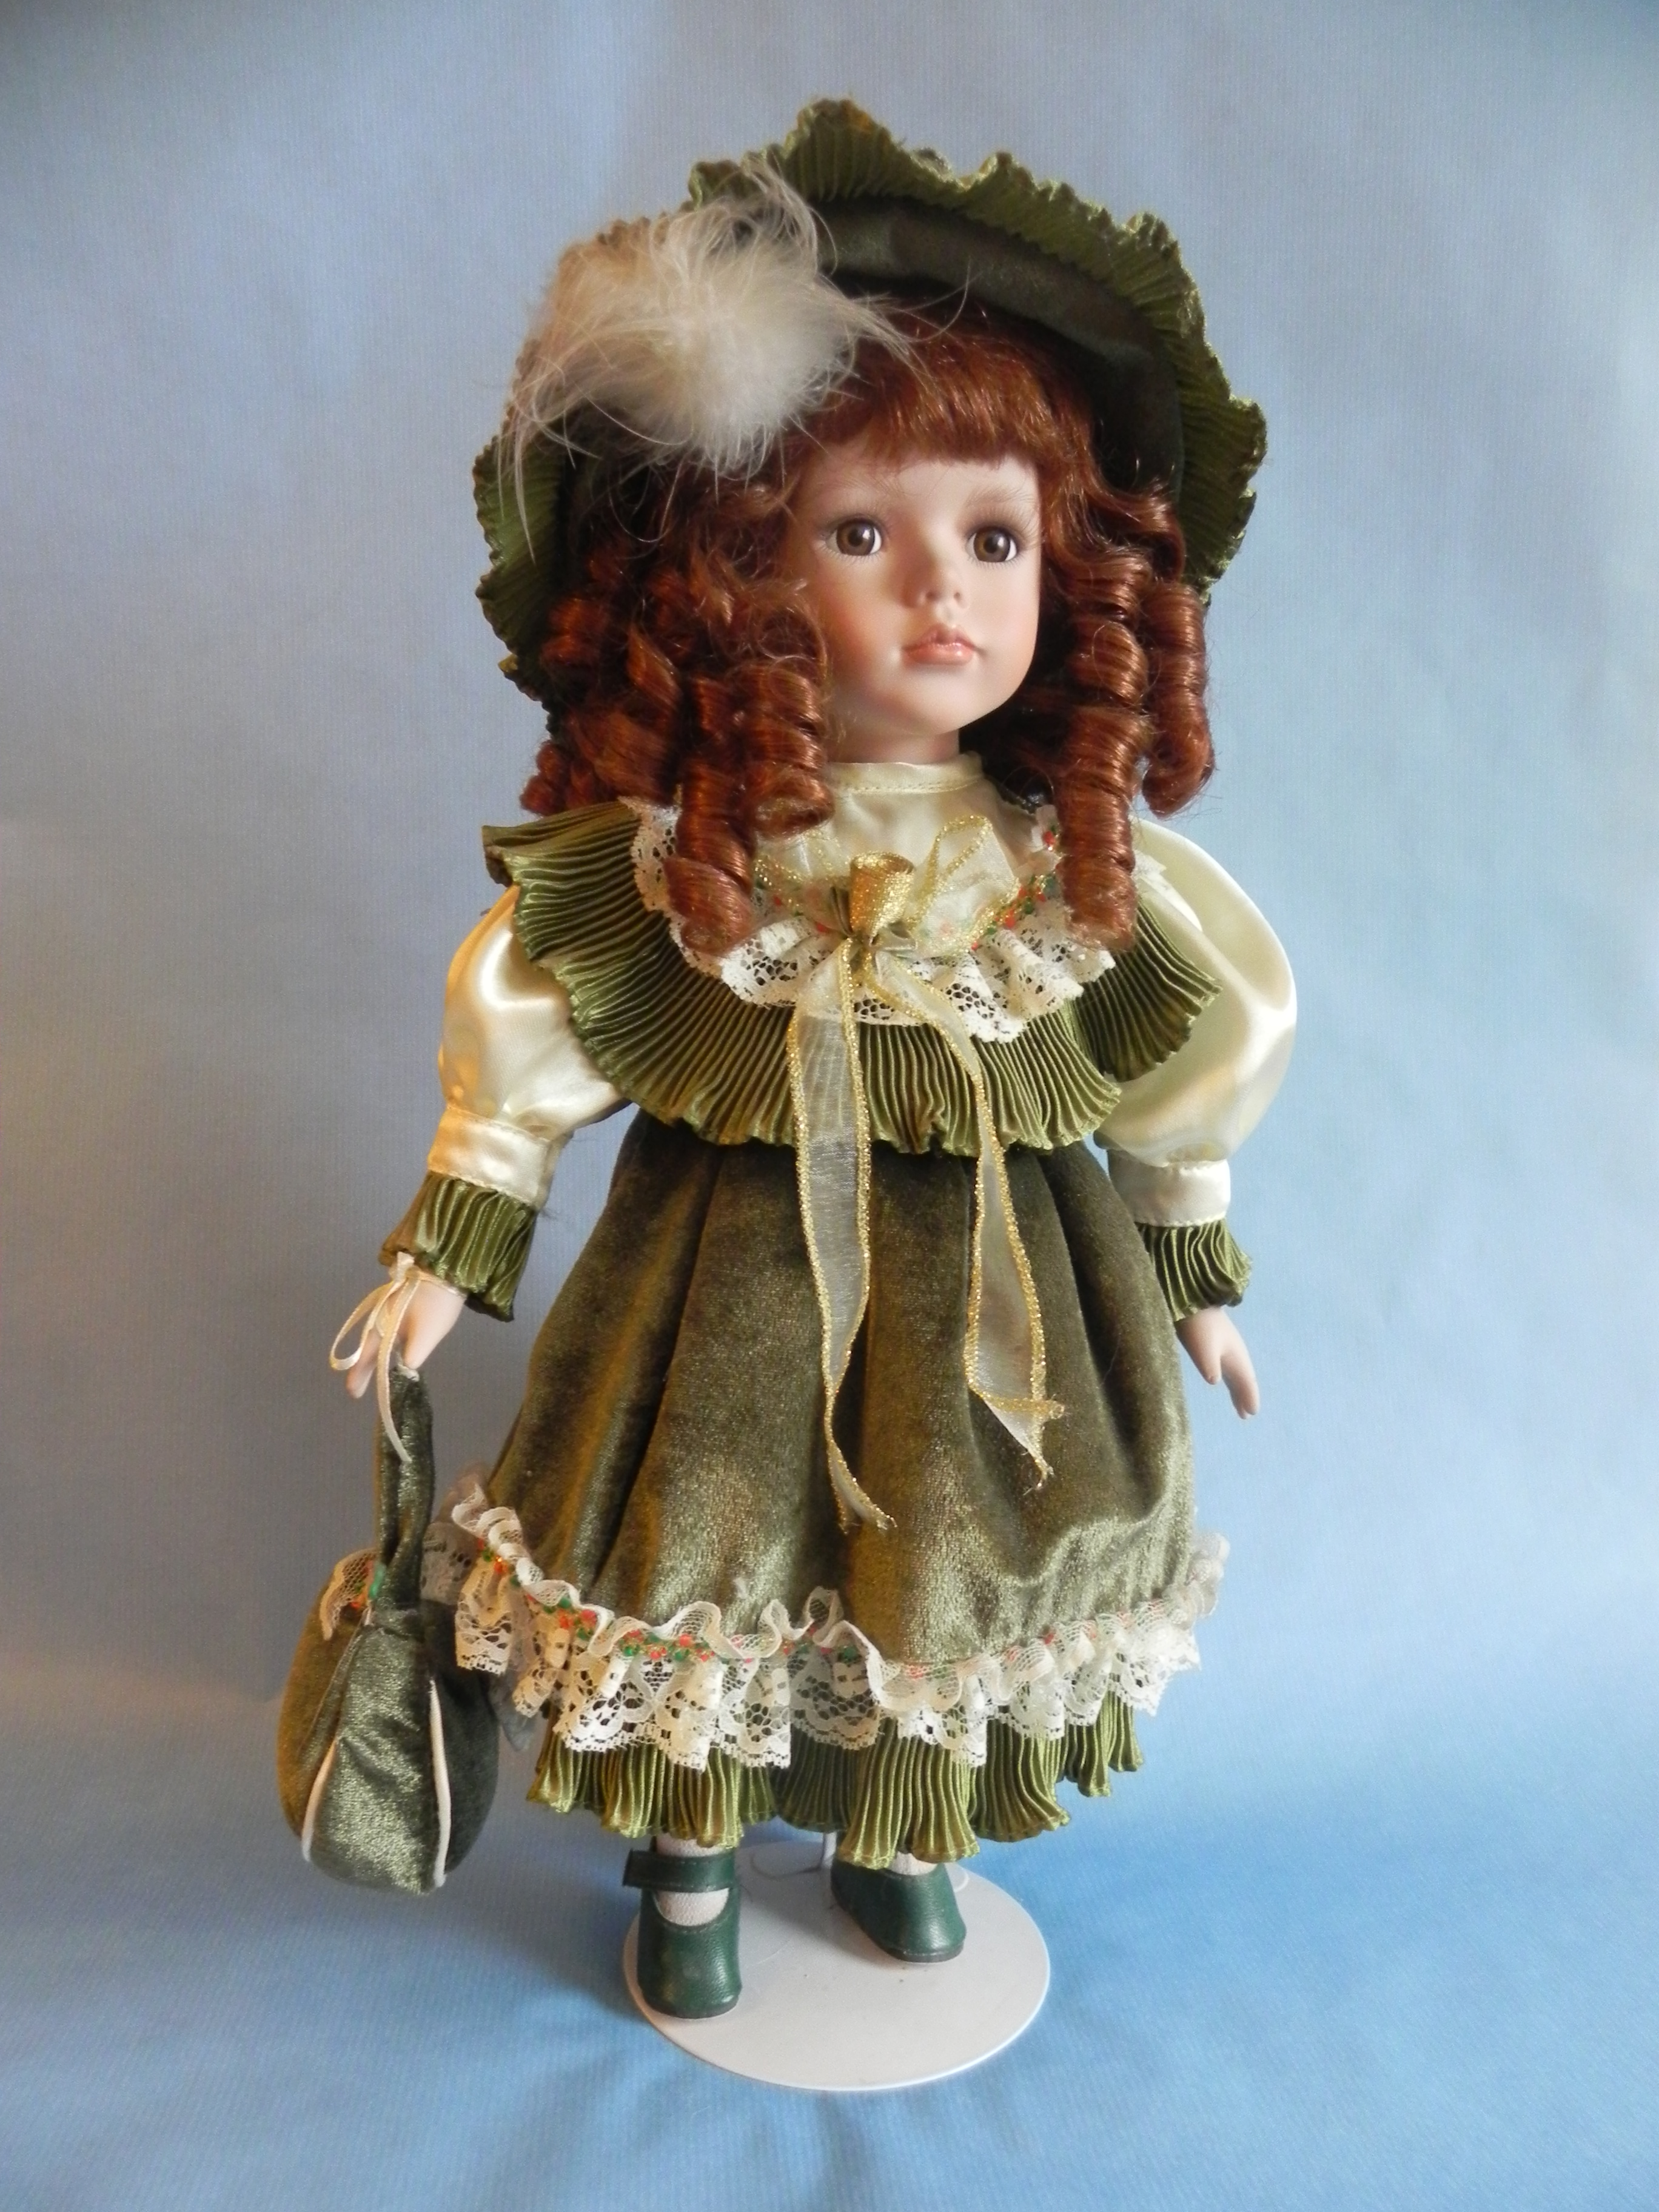 Кукла в зеленом платье